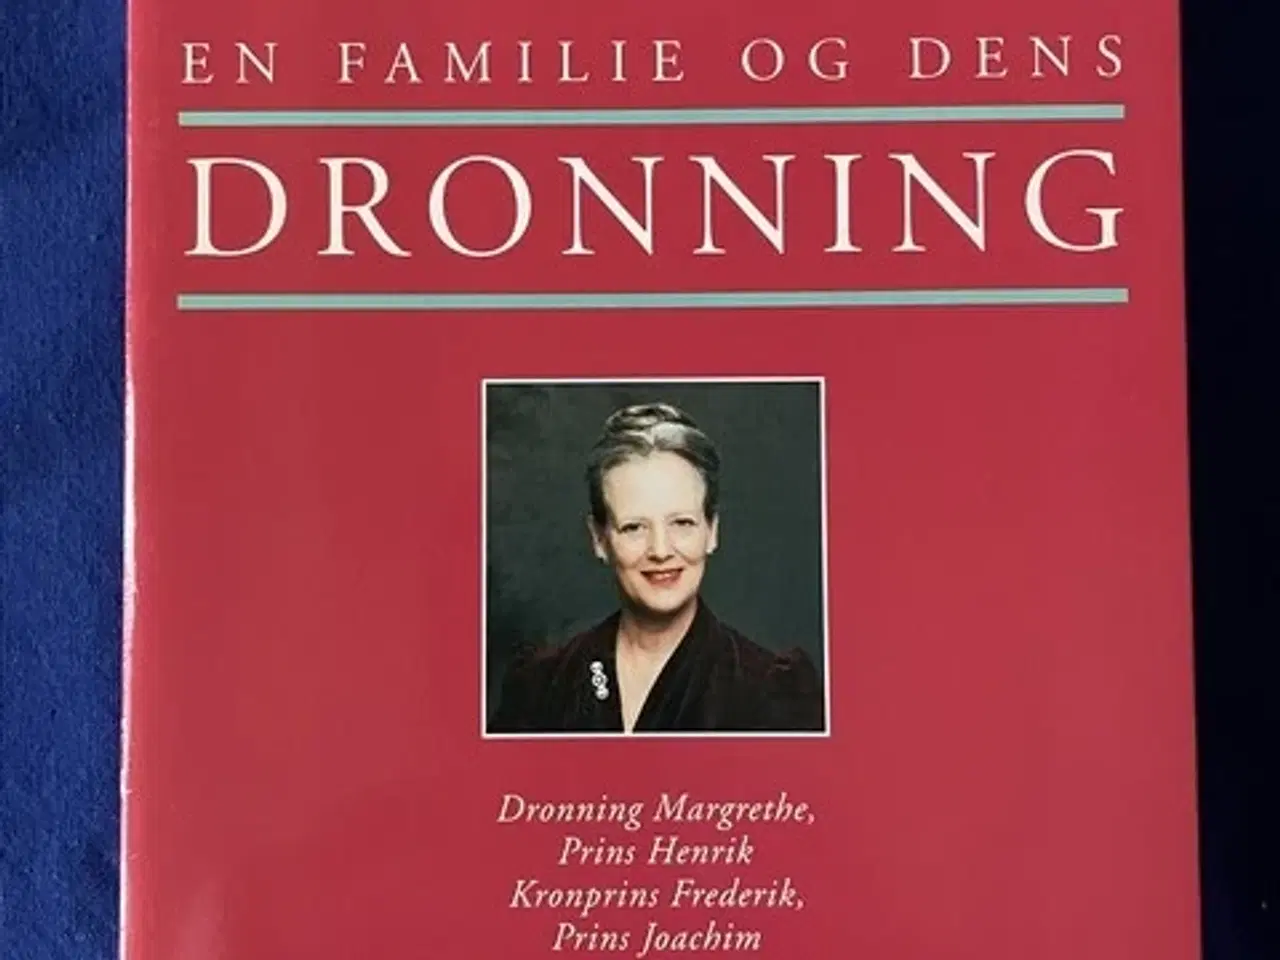 Billede 1 - En familie og dens Dronning - Aschehoug 1996 - Ny